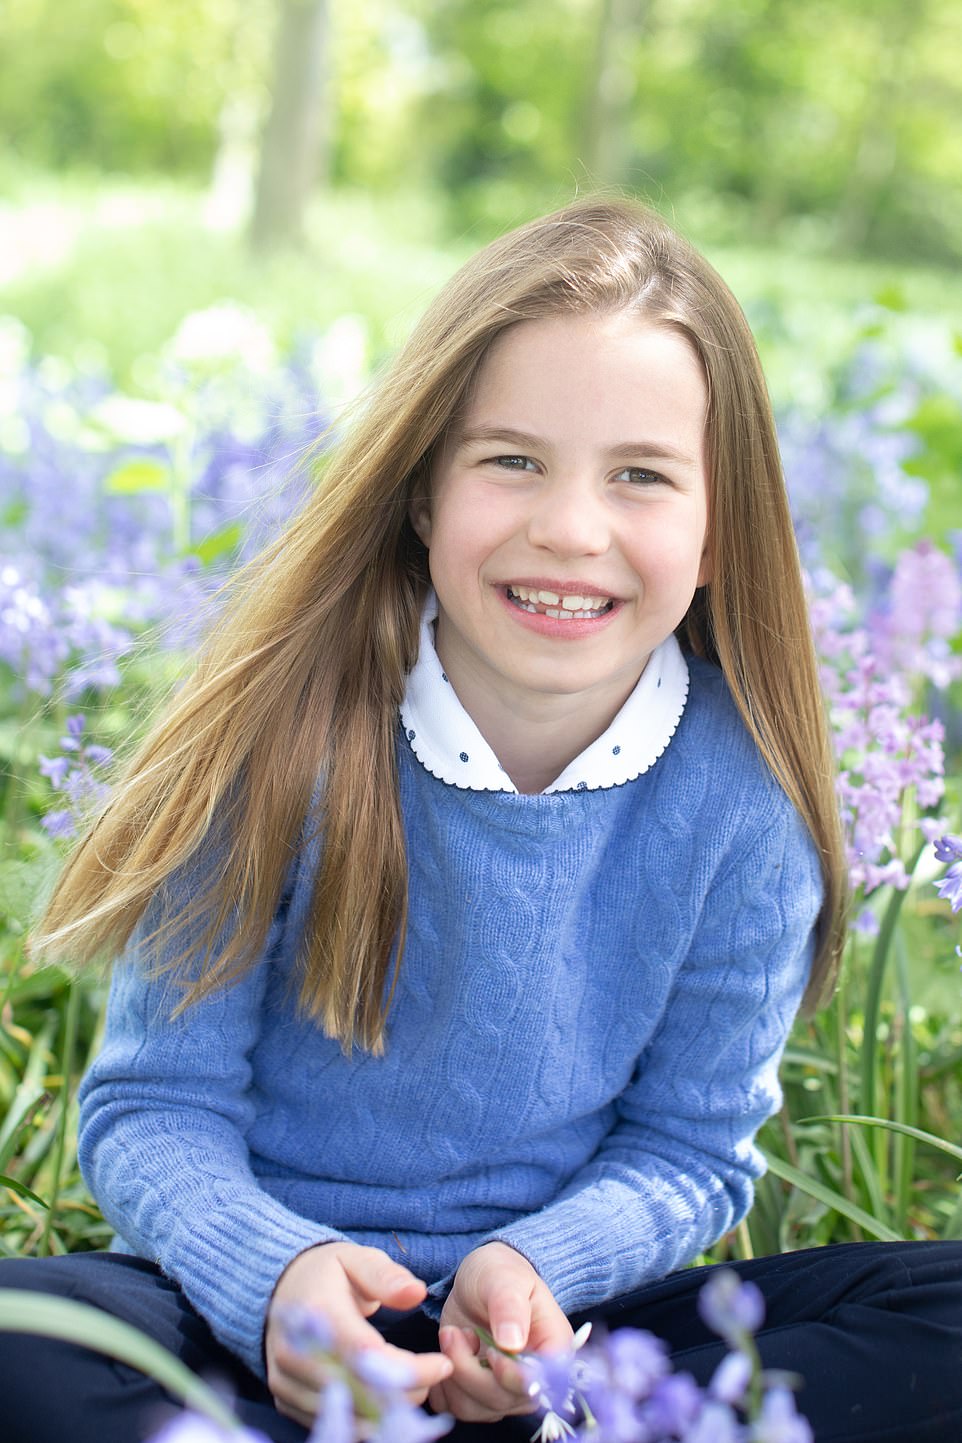 Charlotte se sentó alegremente frente a la cámara mientras su madre Kate tomaba una selección de fotos en el jardín de la casa de su familia en Norfolk.